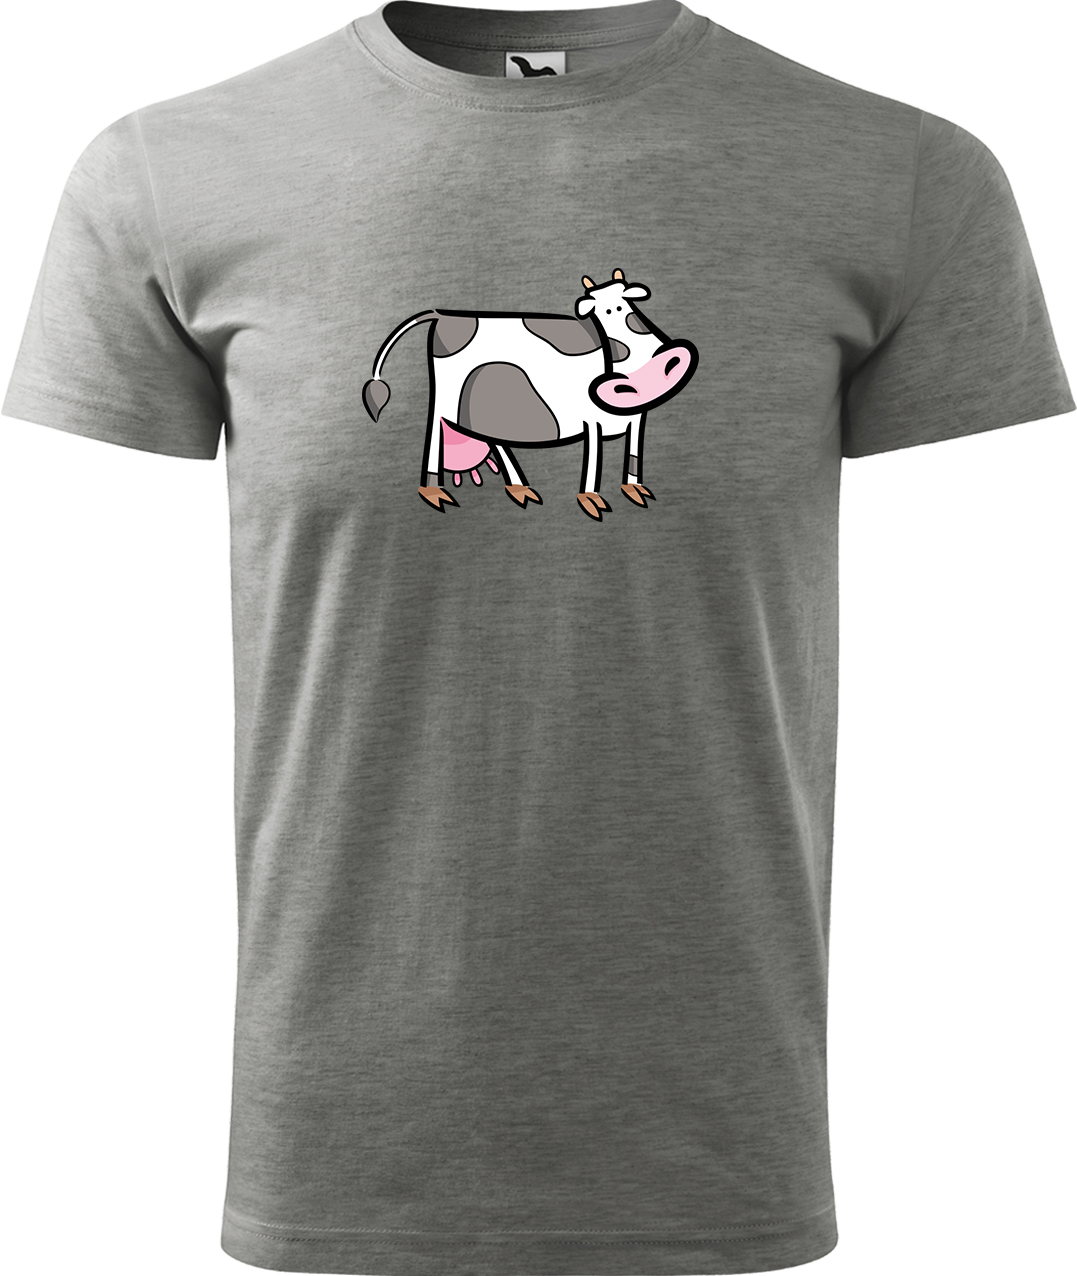 Pánské tričko s krávou - Kravička Velikost: L, Barva: Tmavě šedý melír (12), Střih: pánský